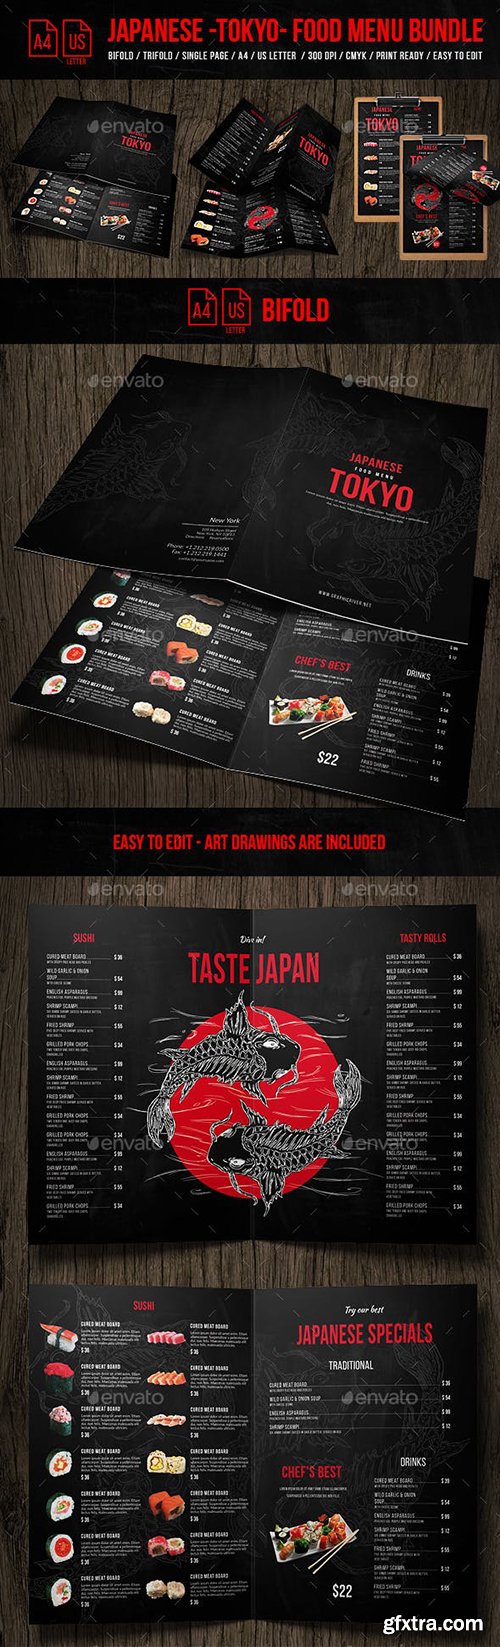 Graphicriver - Japanese Tokyo Food Menu Bundle - A4 & US Letter Formats 21586410